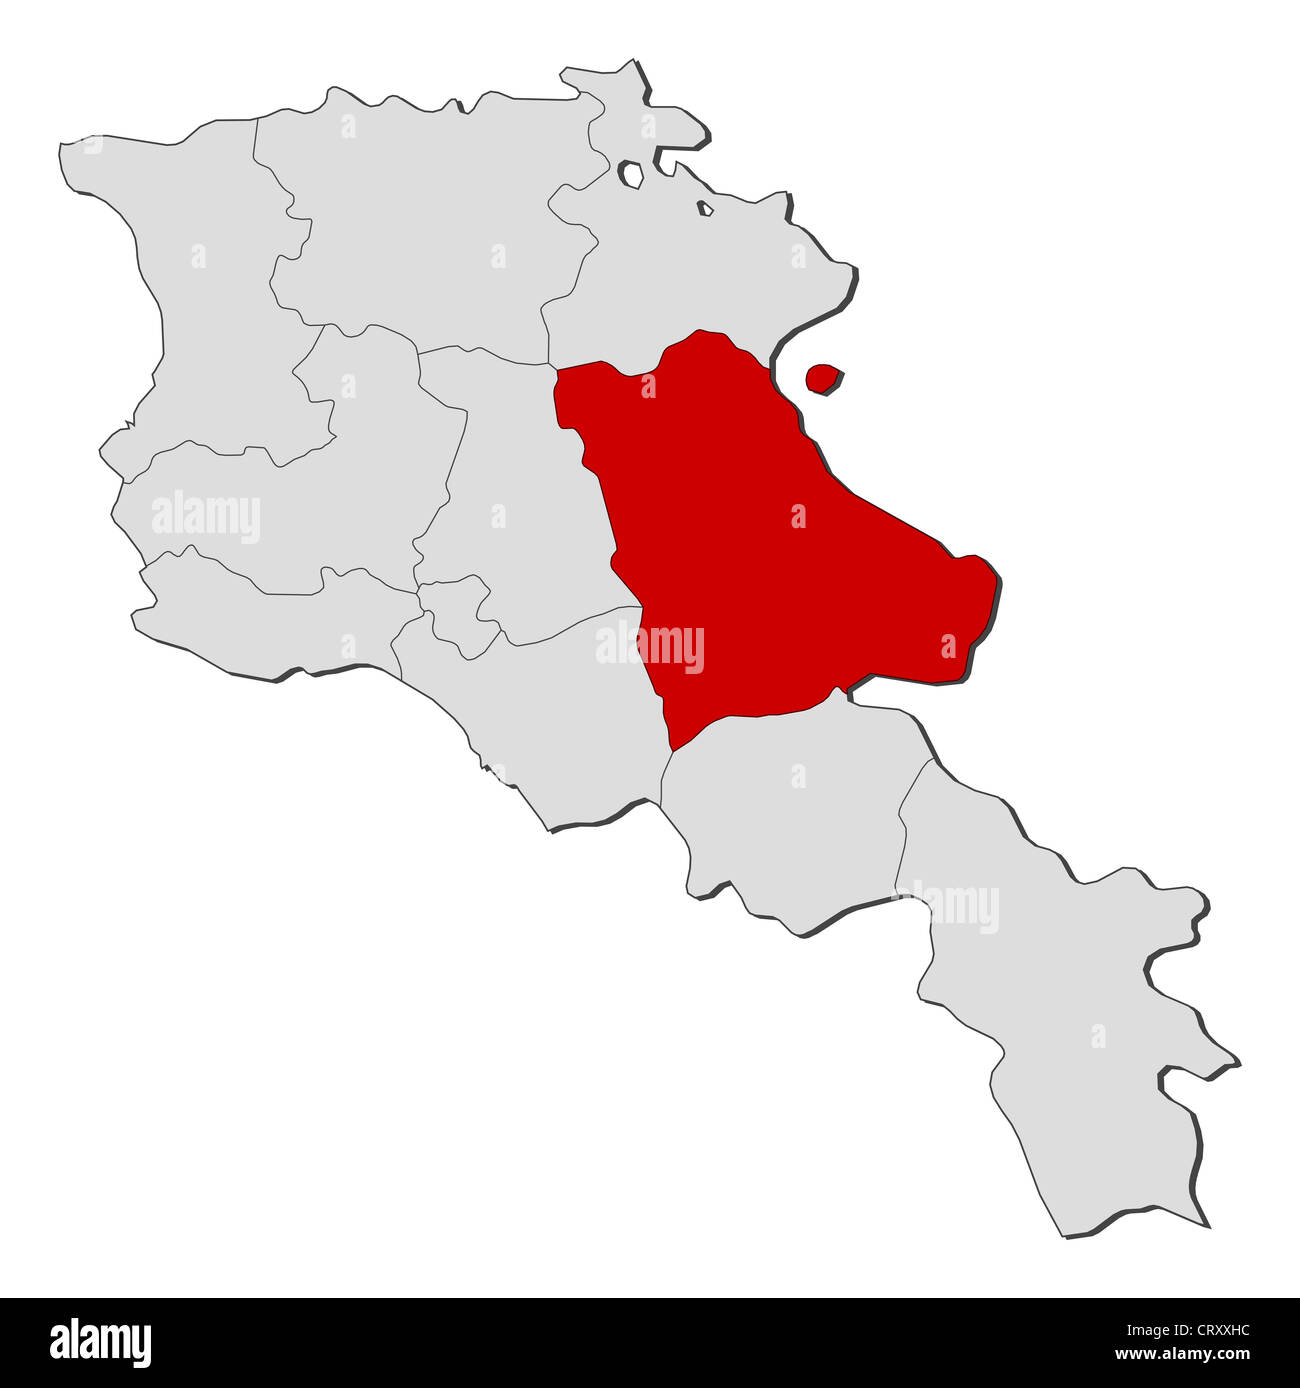 Mapa político de Armenia con los varios estados donde Gegharkunik está resaltada. Foto de stock